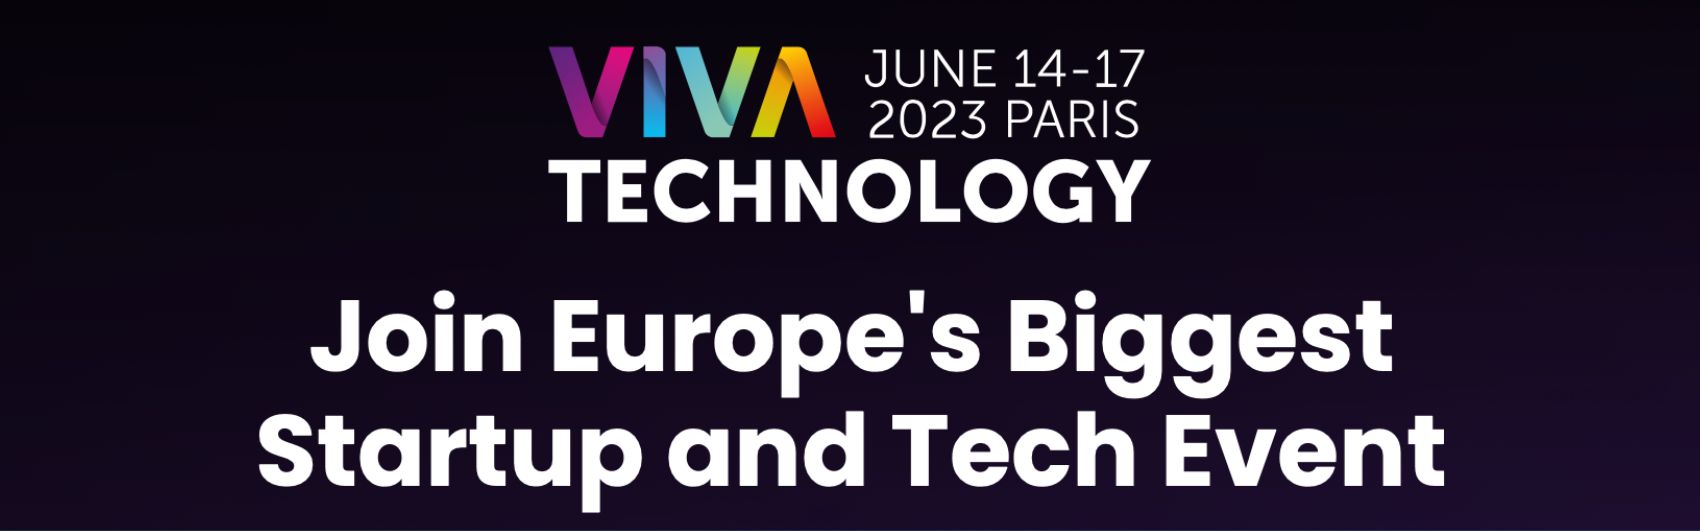 Article Le MBAMCI présent à la Viva Tech 2023 !